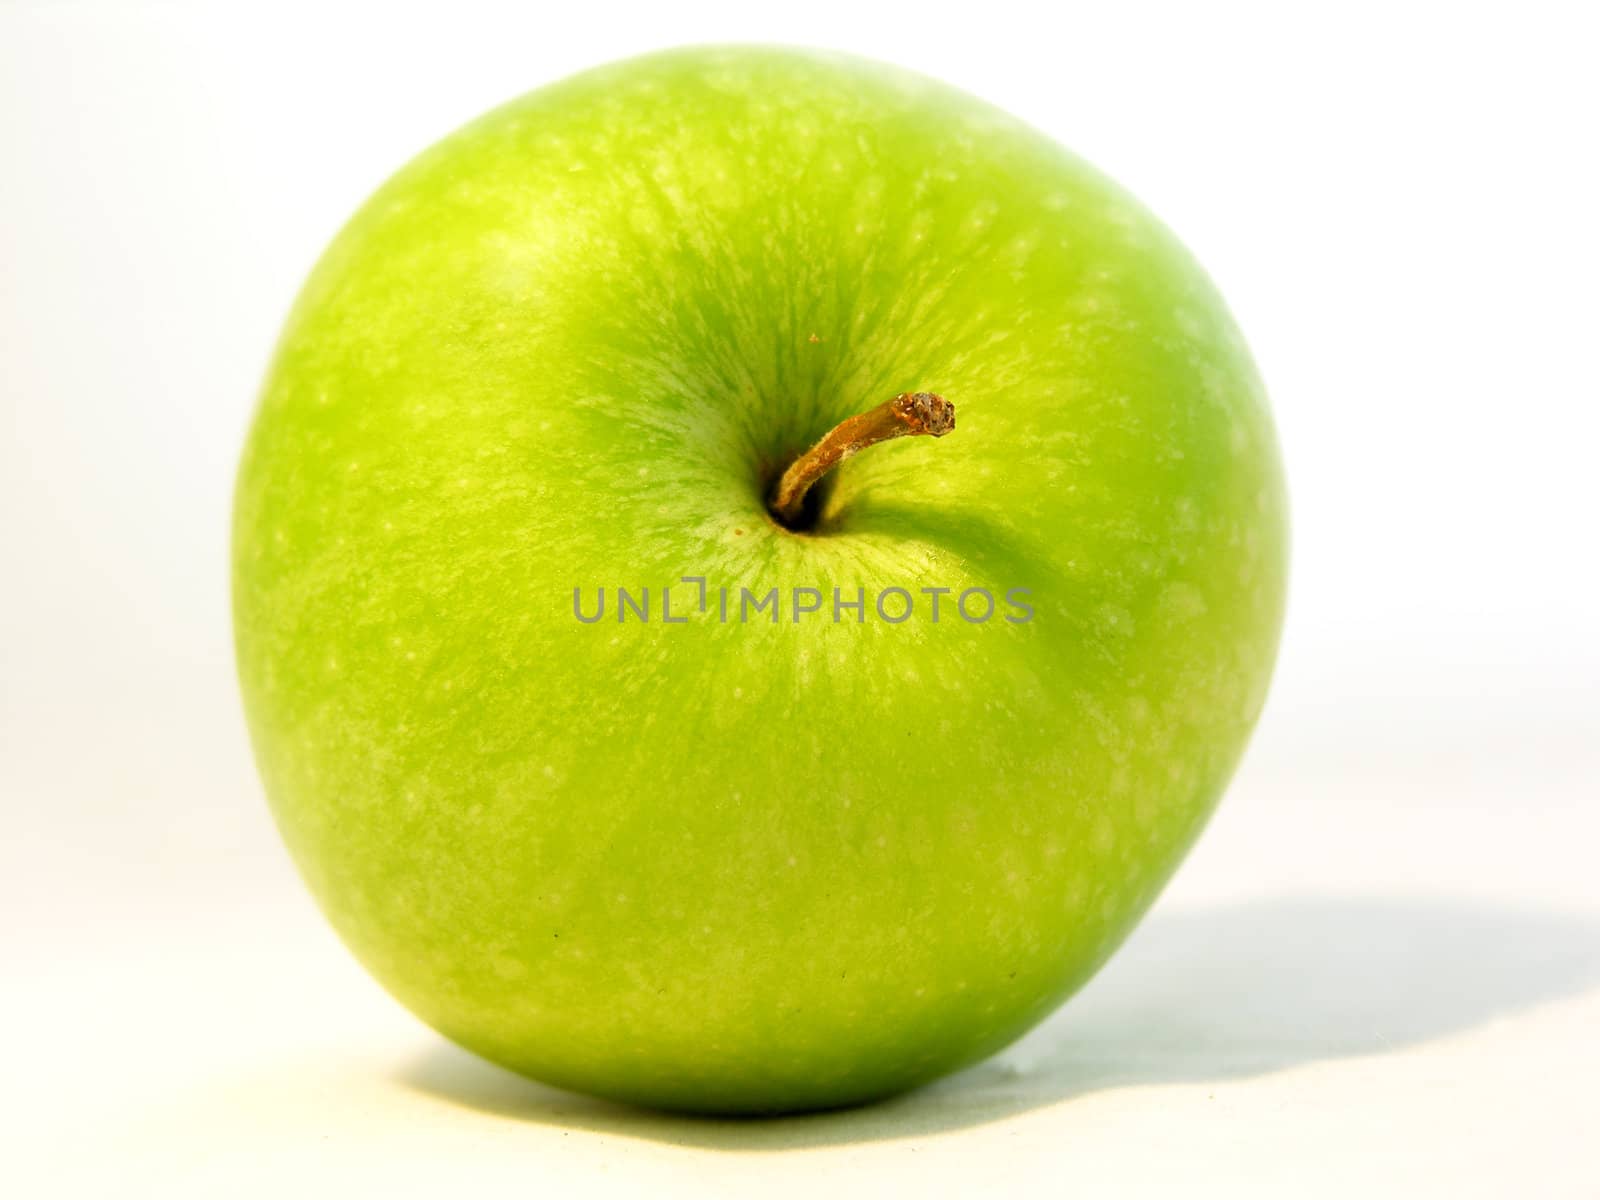 Green apple by kjpargeter